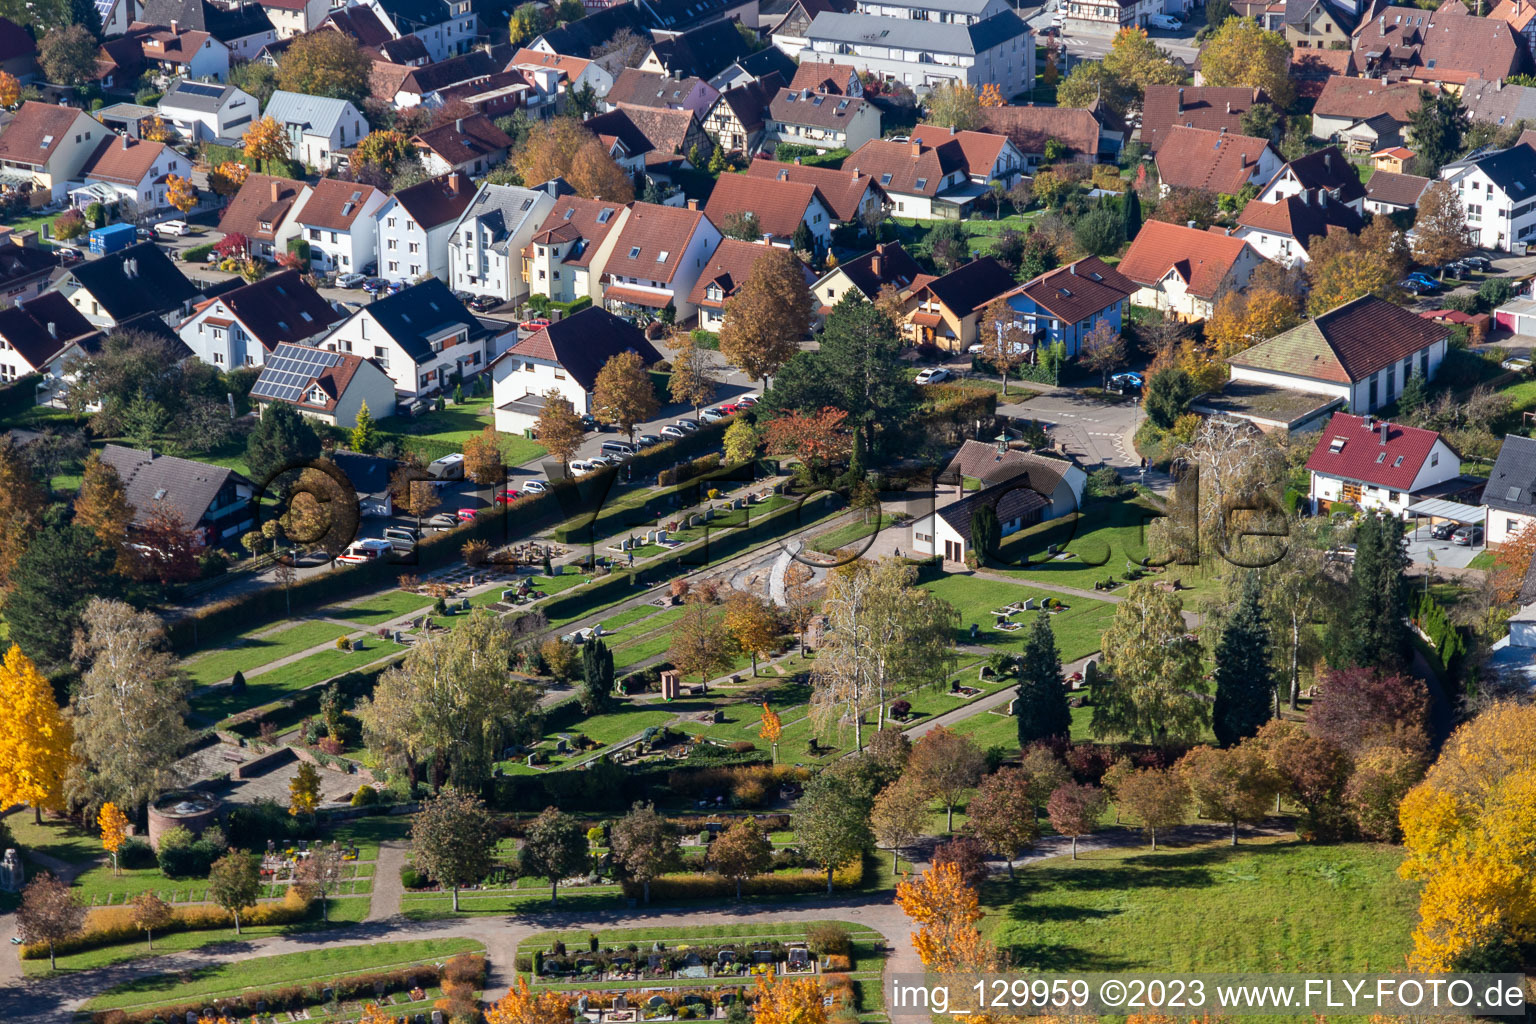 Friedhof Langensteinbach in Karlsbad im Bundesland Baden-Württemberg, Deutschland aus der Luft betrachtet